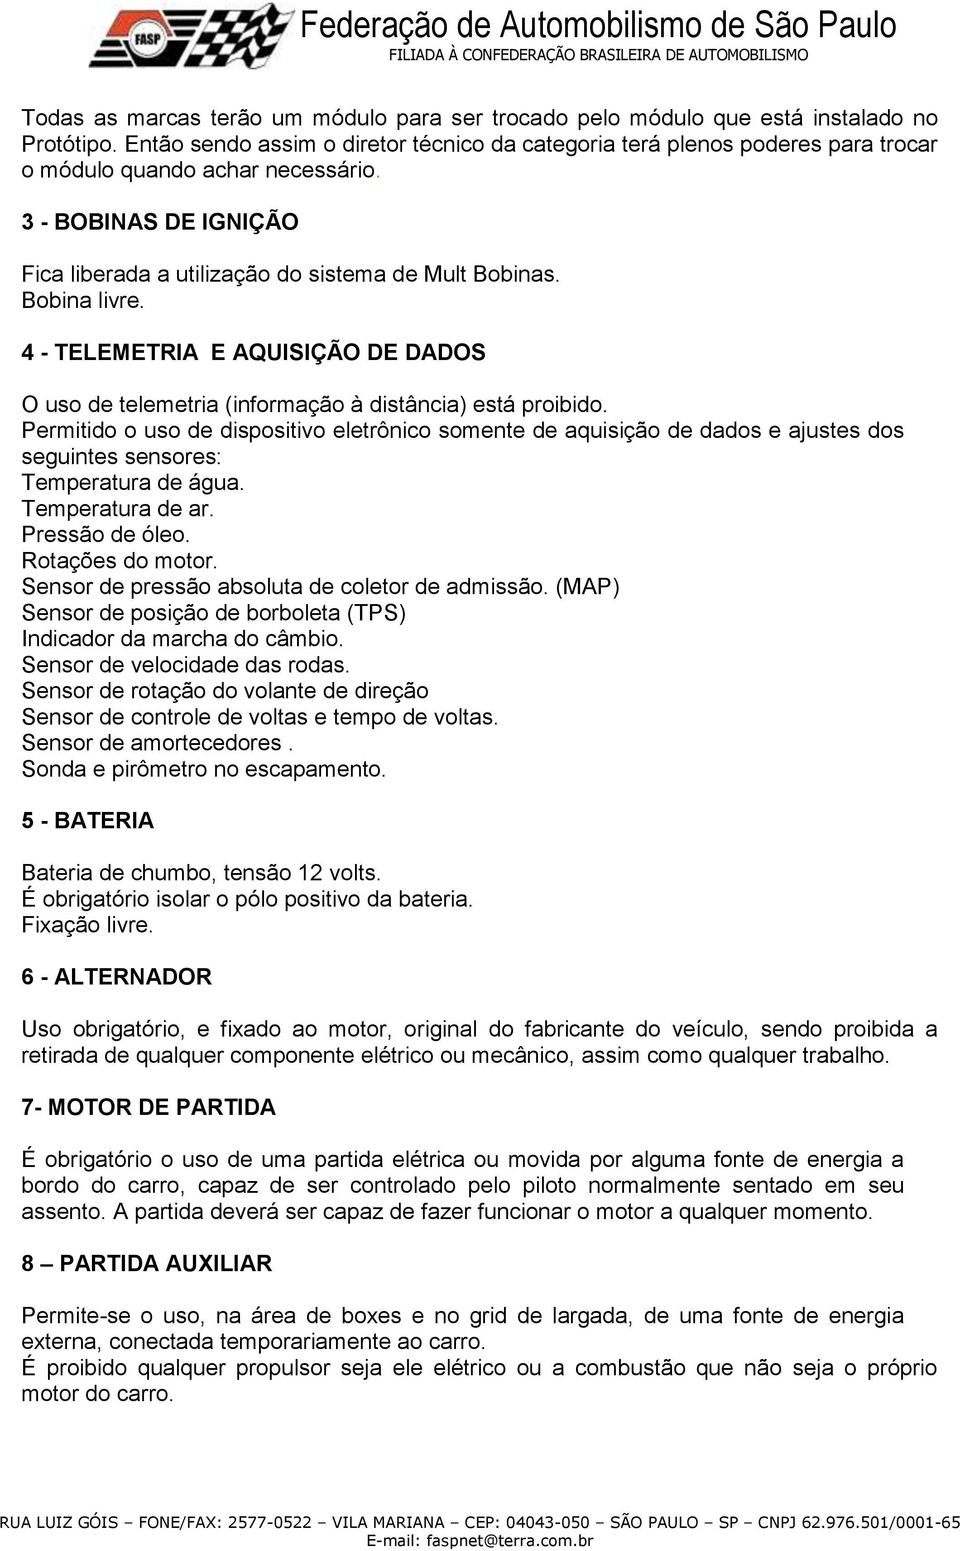 Bobina livre. 4 - TELEMETRIA E AQUISIÇÃO DE DADOS O uso de telemetria (informação à distância) está proibido.